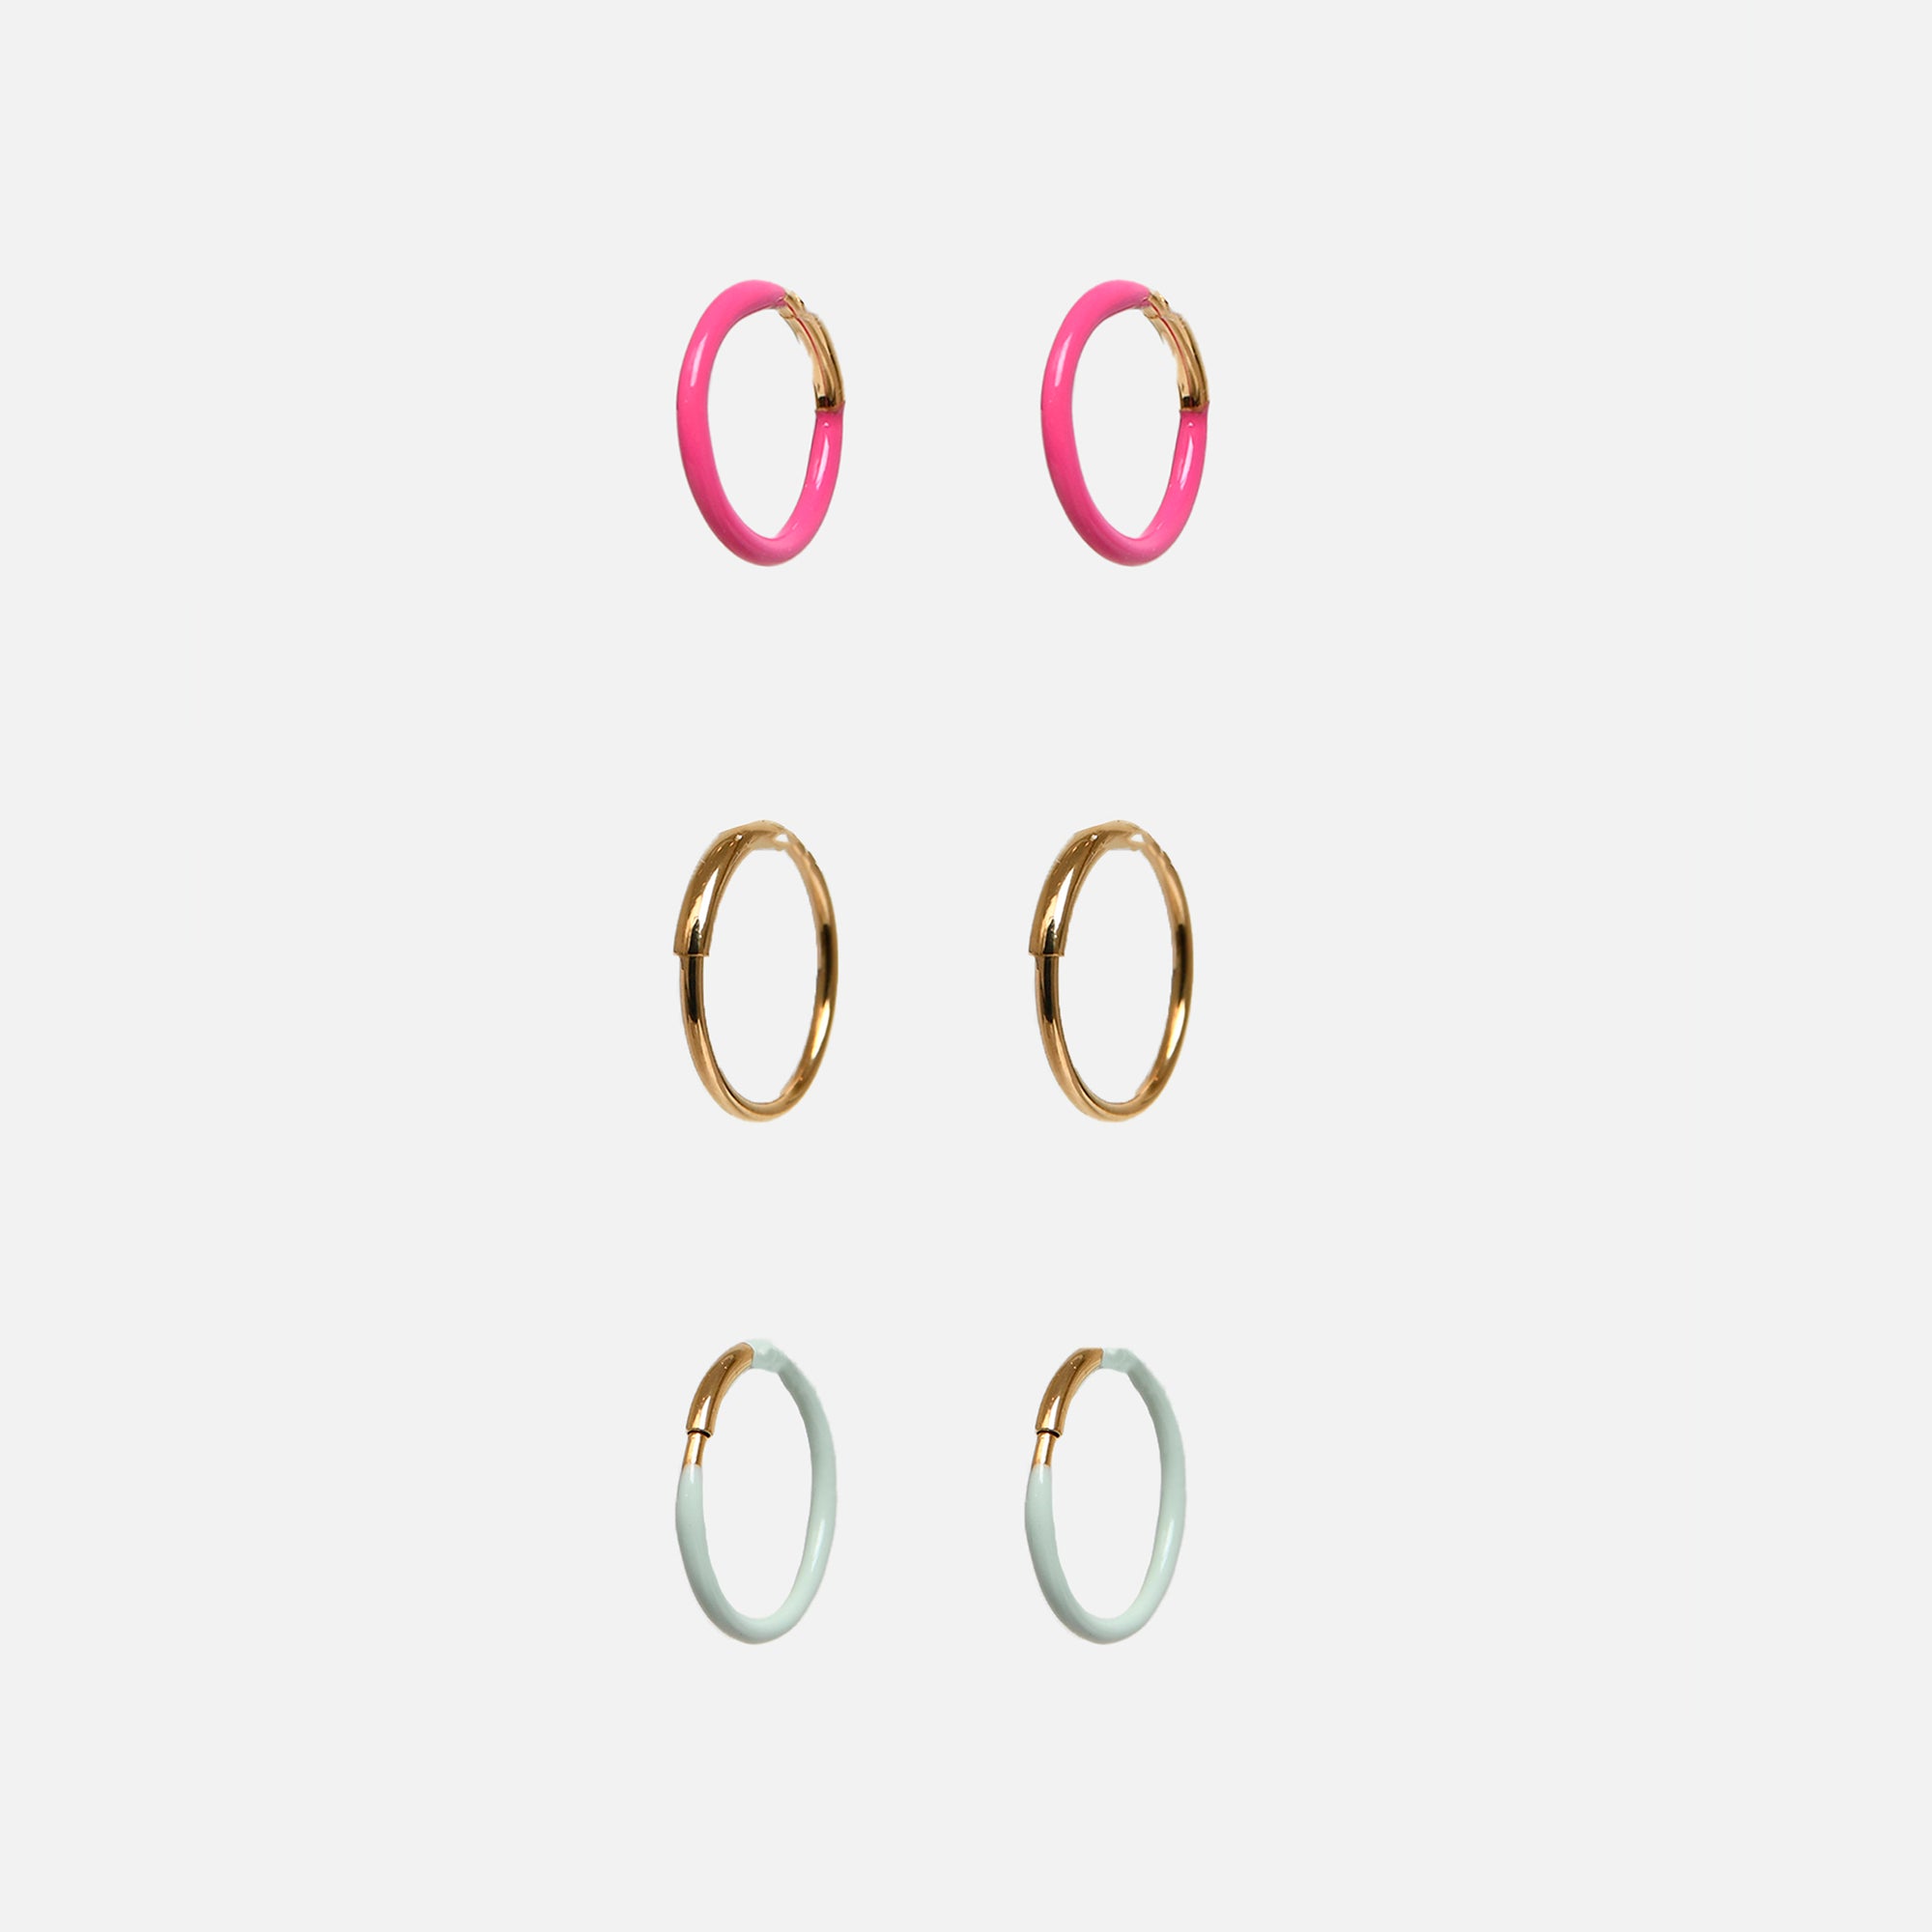 Trio of three colors hoop earrings in stainless steel